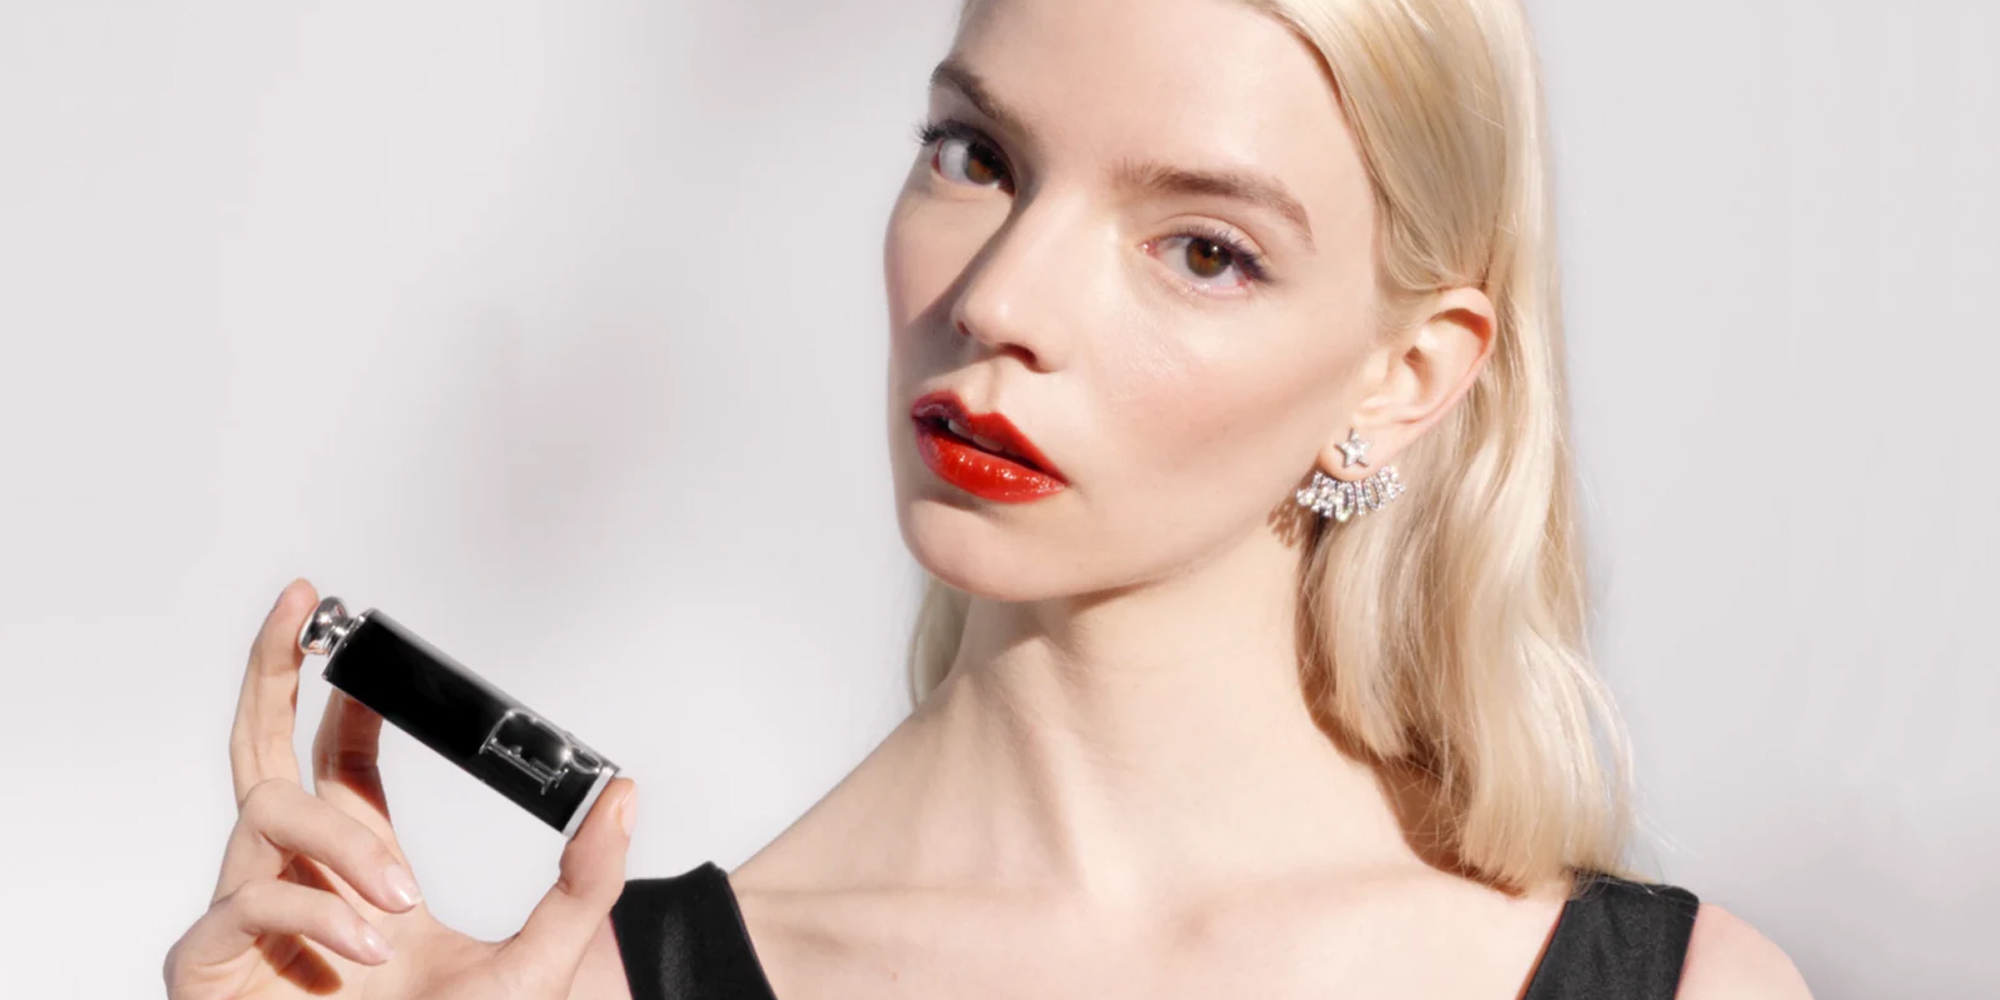 Dior Addict Refillable Dior Shine Lipstick  Dior Beauty HK